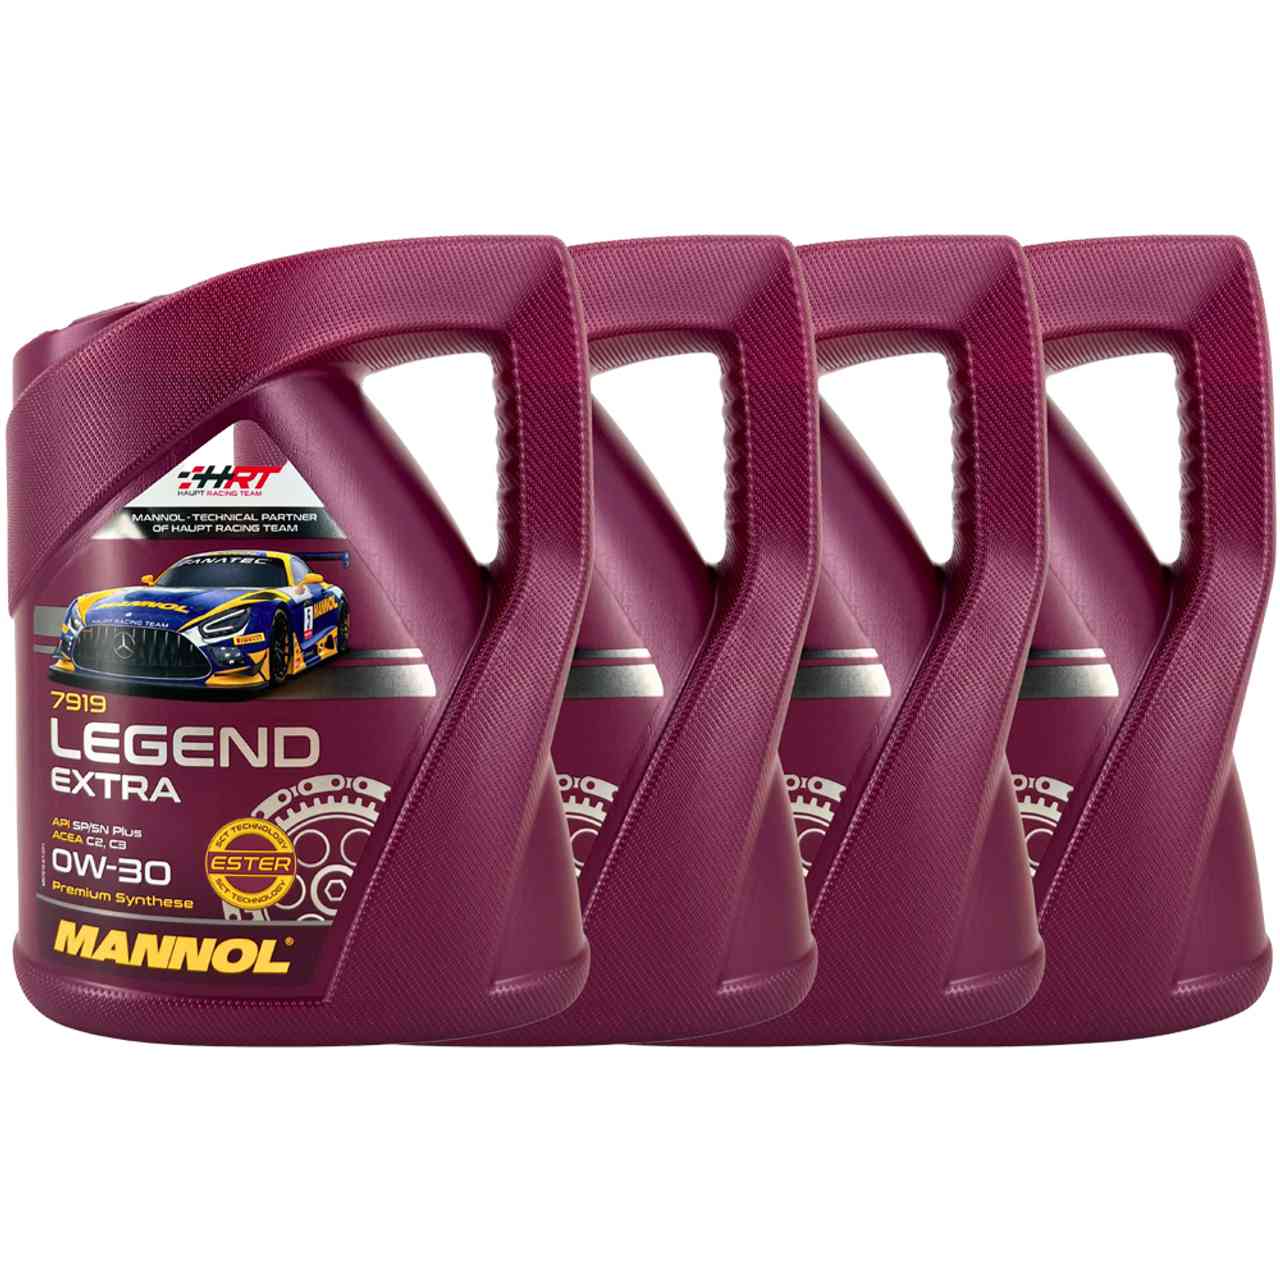 Mannol Legend Extra 0W-30 4x5 Liter